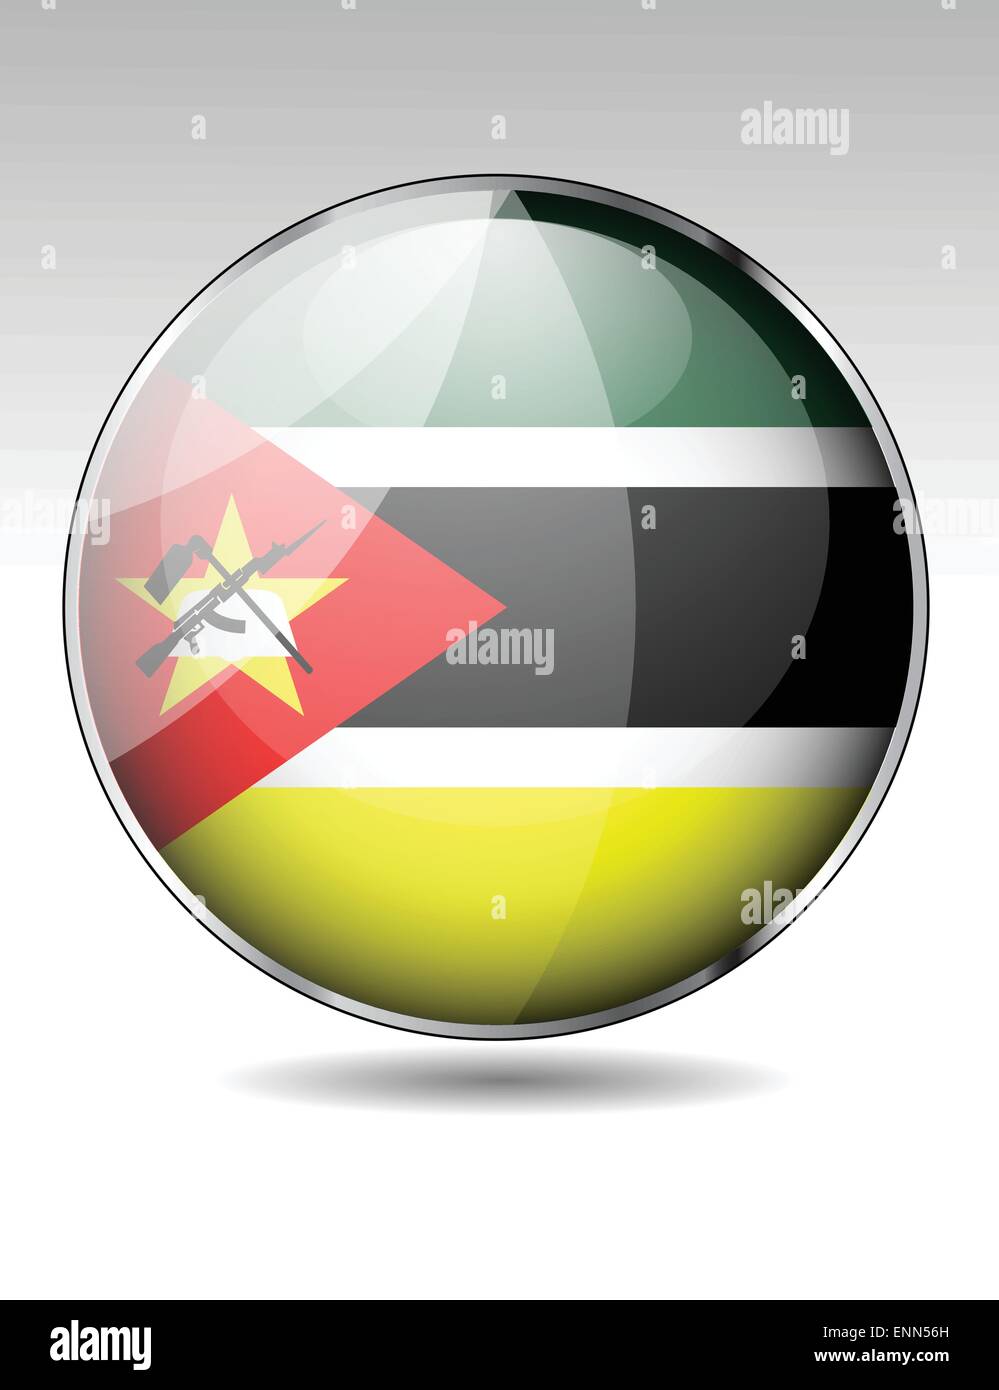 Mozambique flag button Stock Vector